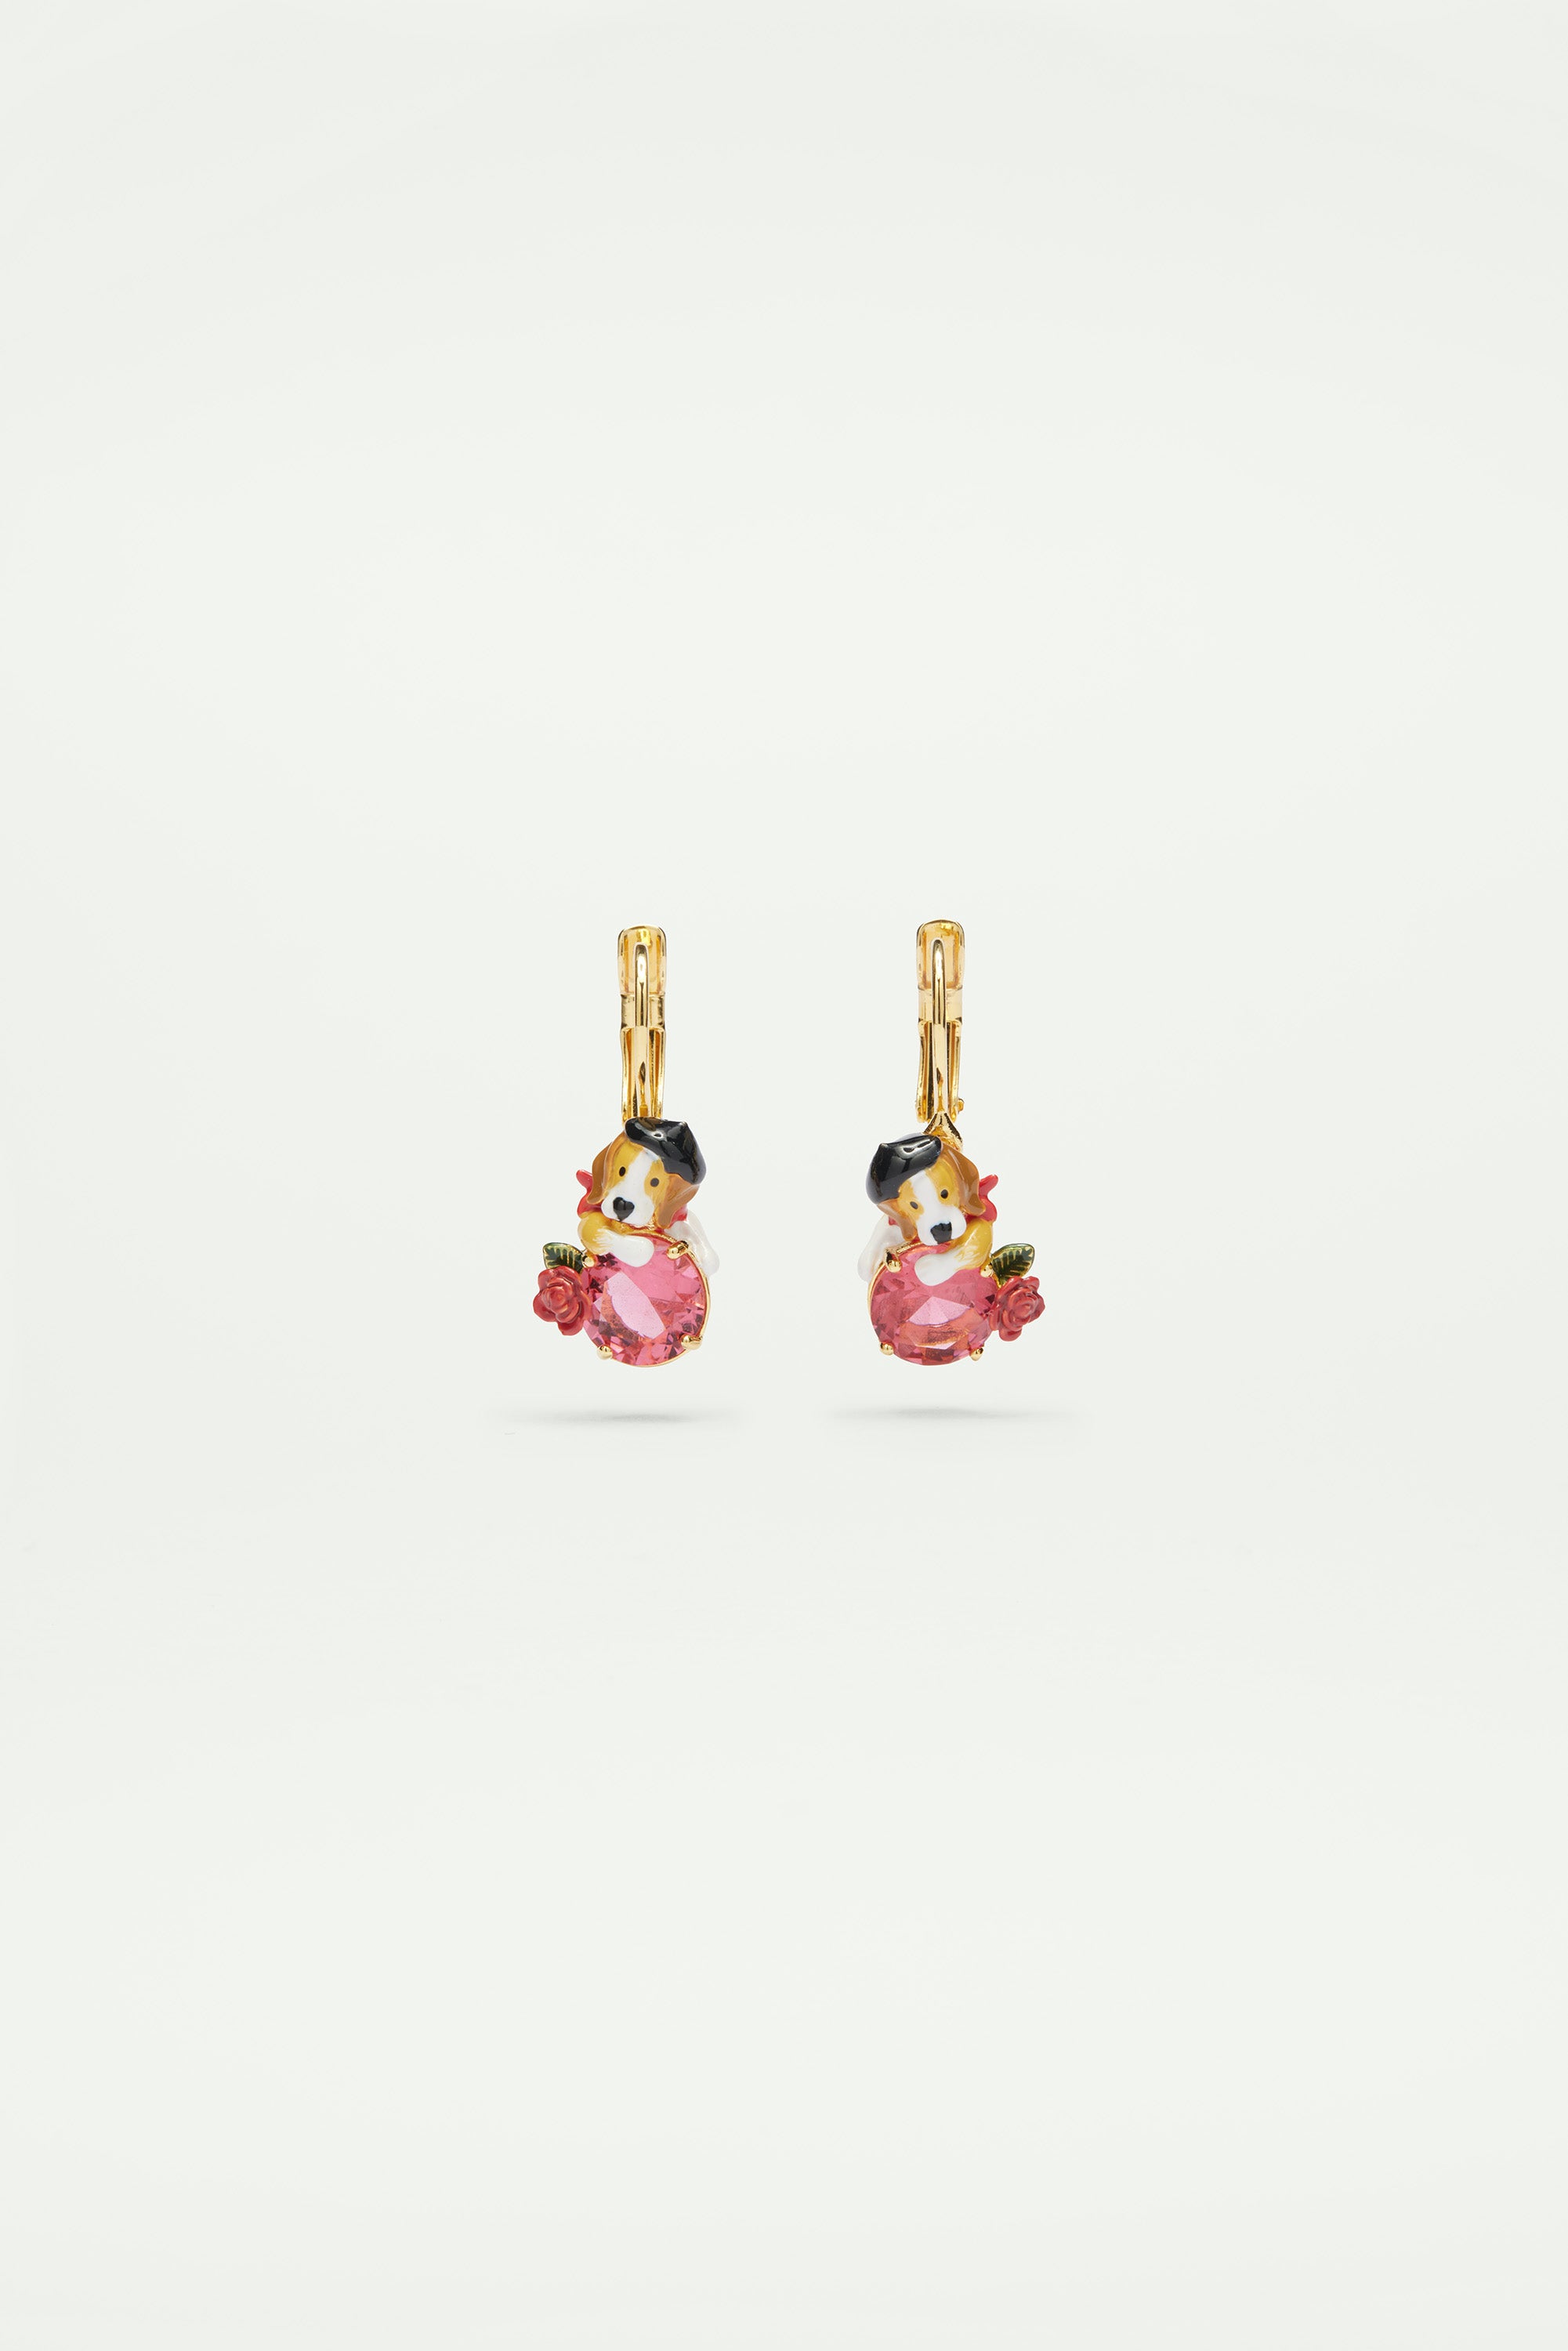 Beagle and pink cut glass stone sleeper earrings